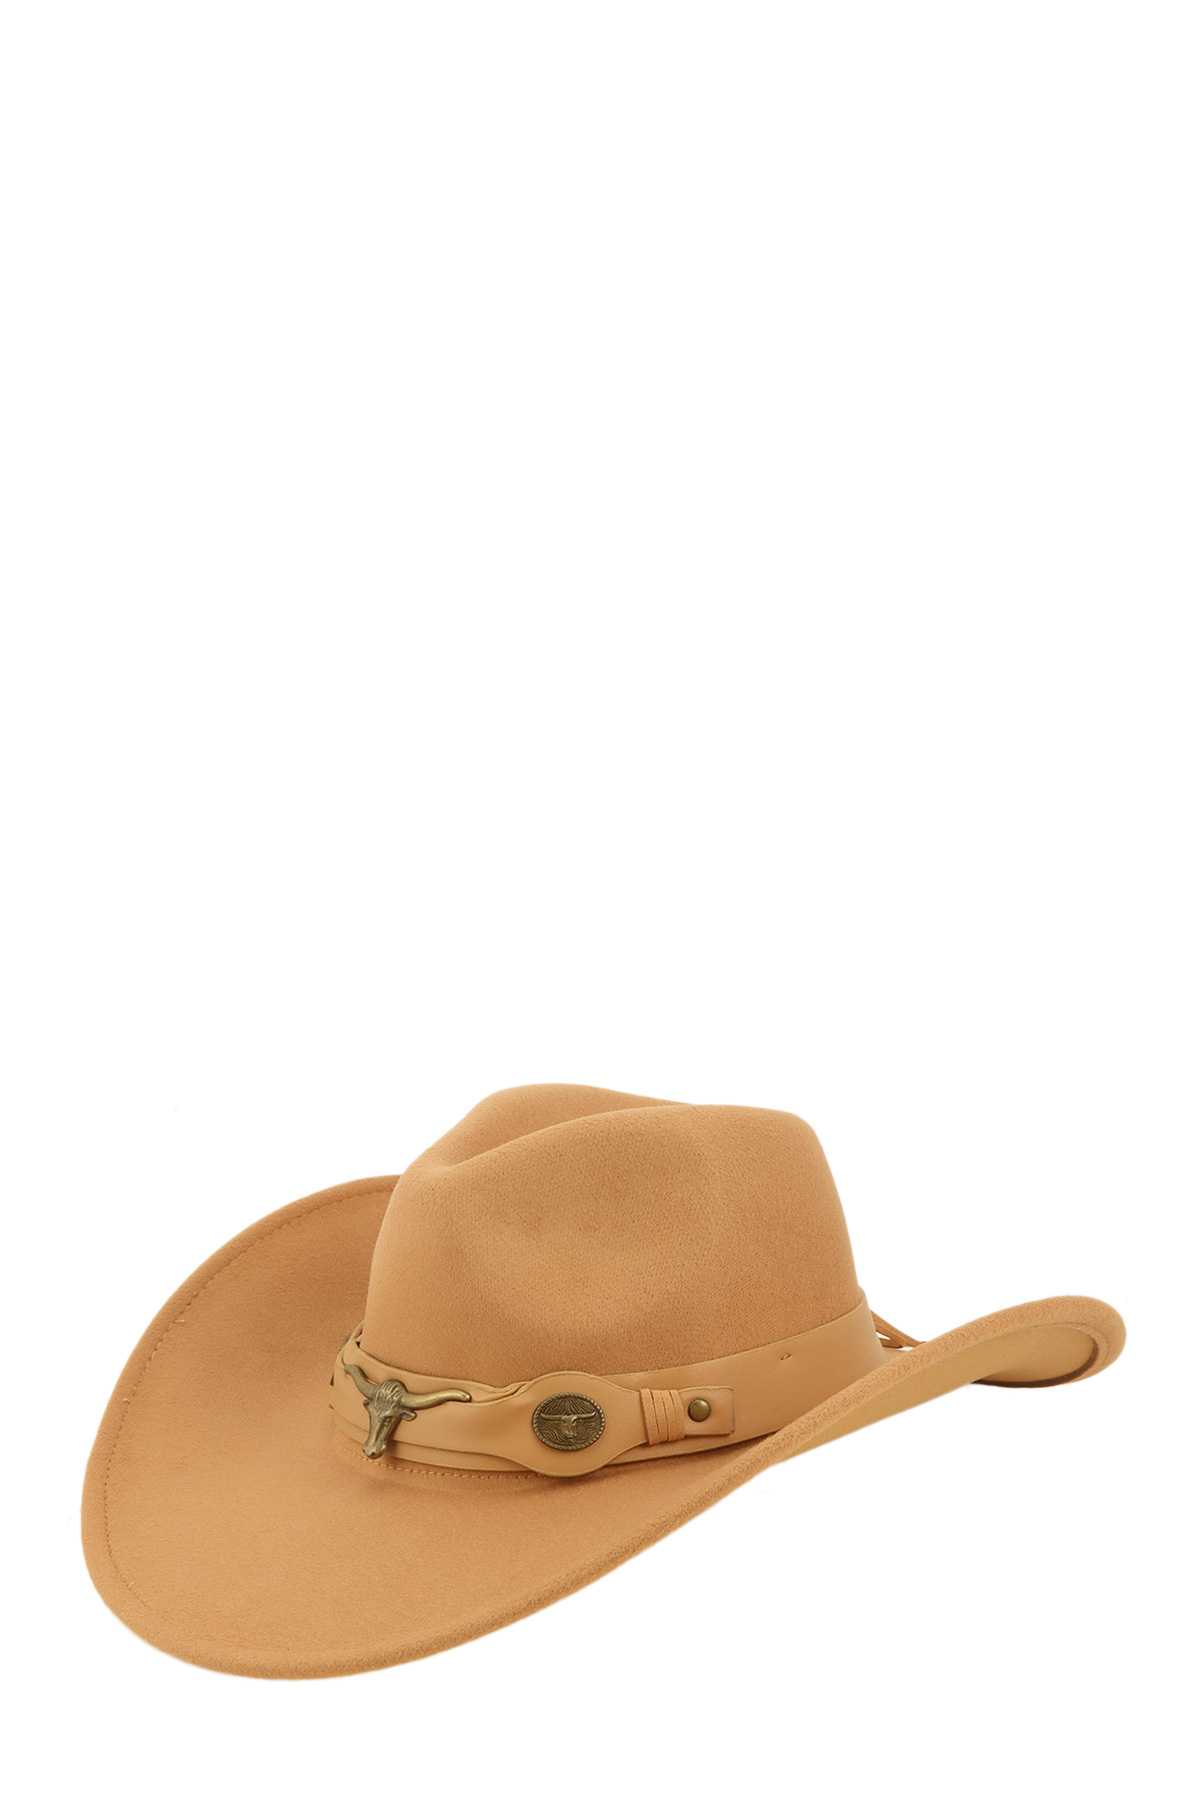 Metal Bull Accent Fedora Cowboy Hat